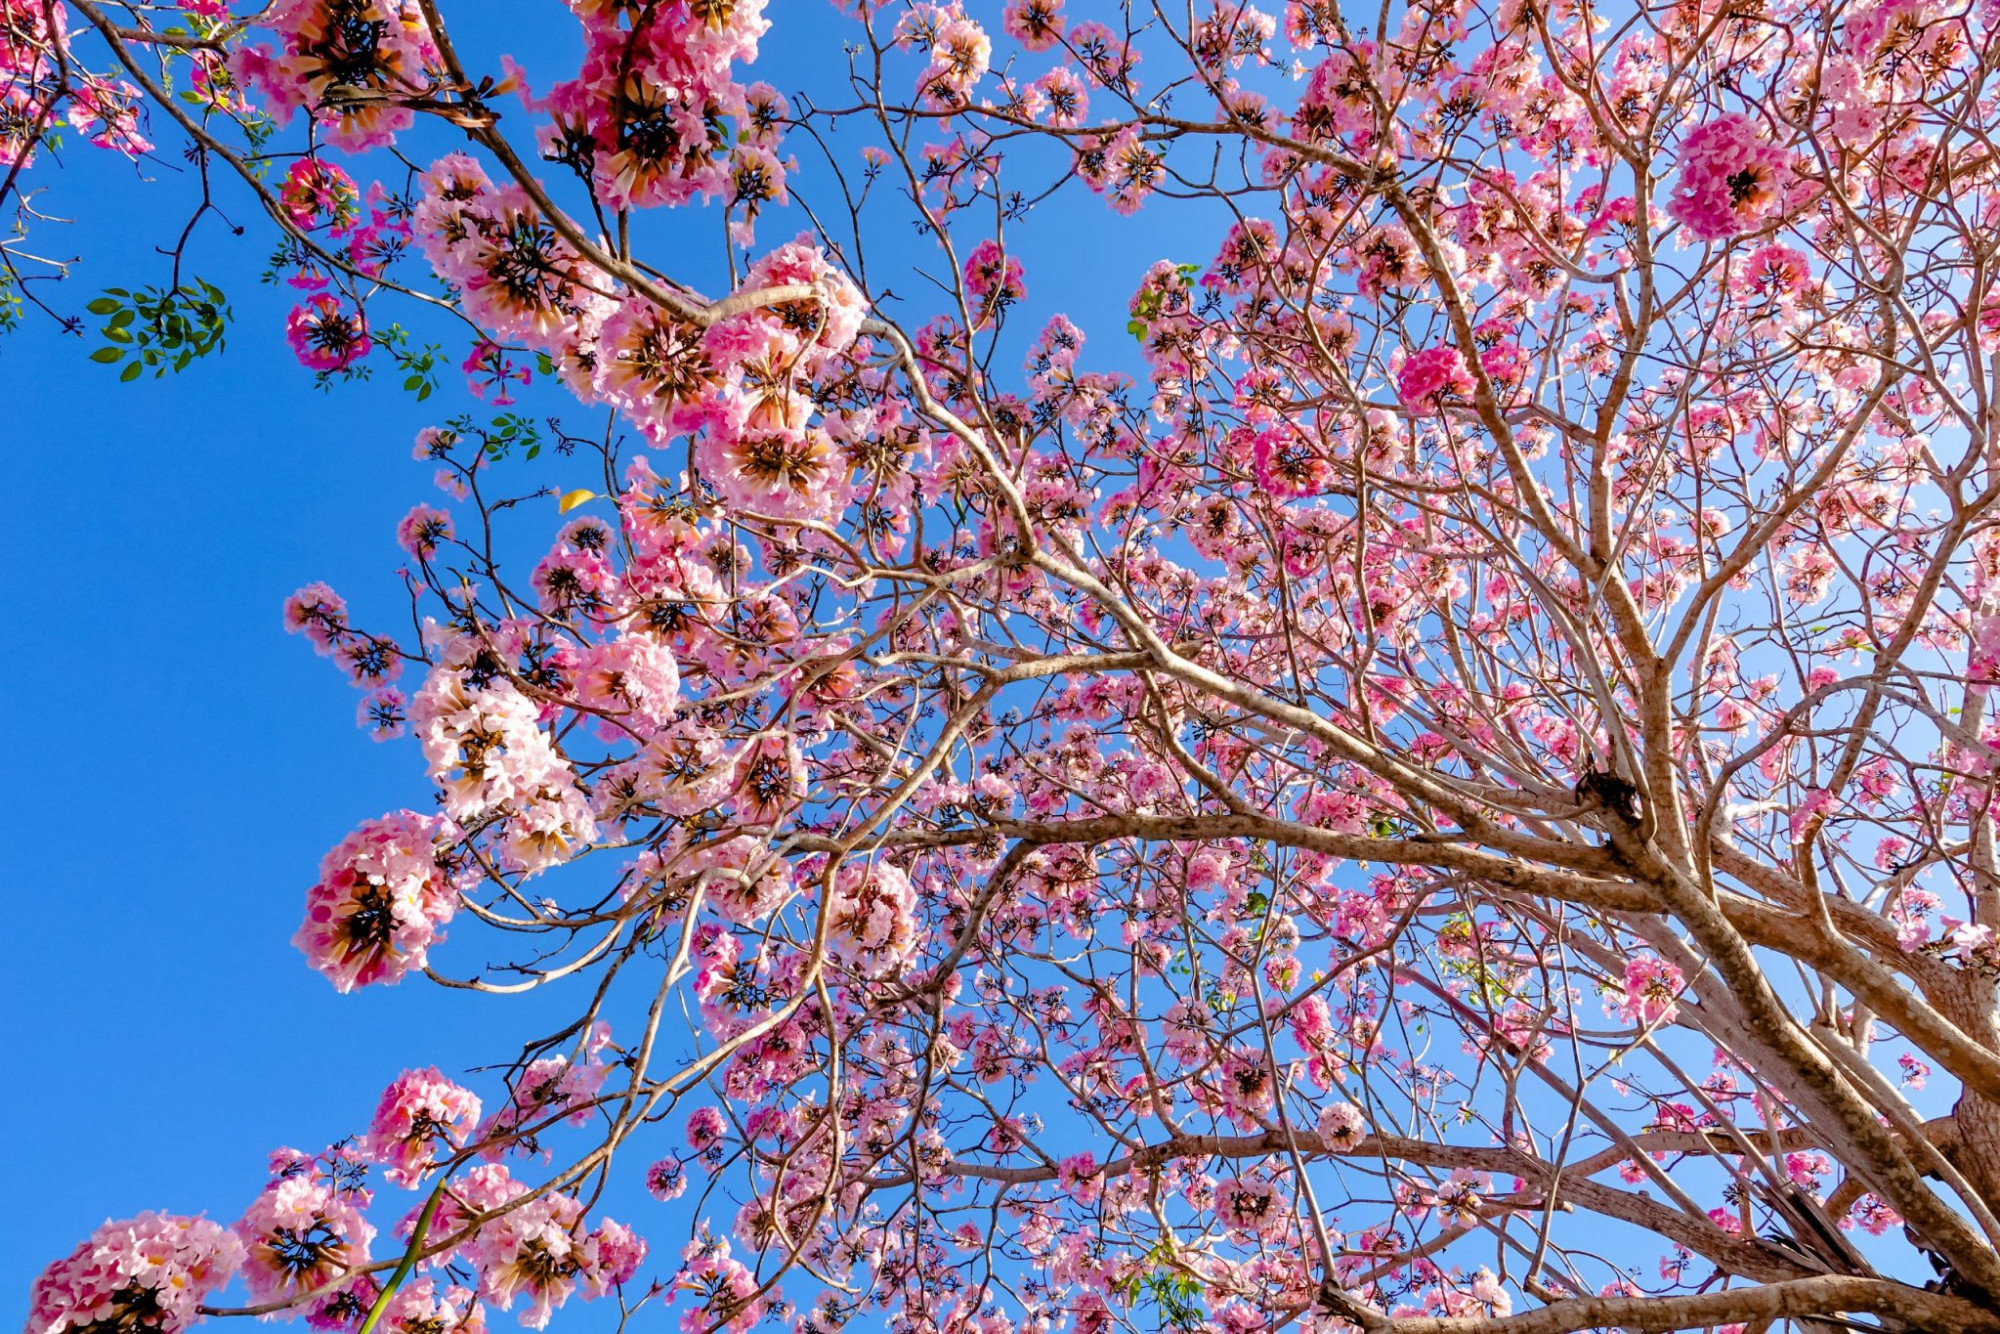 Kèn hồng có màu sắc tựa như hoa anh đào, cứ vào độ cuối tháng 2 hoặc đầu tháng 3, loài hoa này bắt đầu trổ nụ và rộ lên sắc hồng phấn.